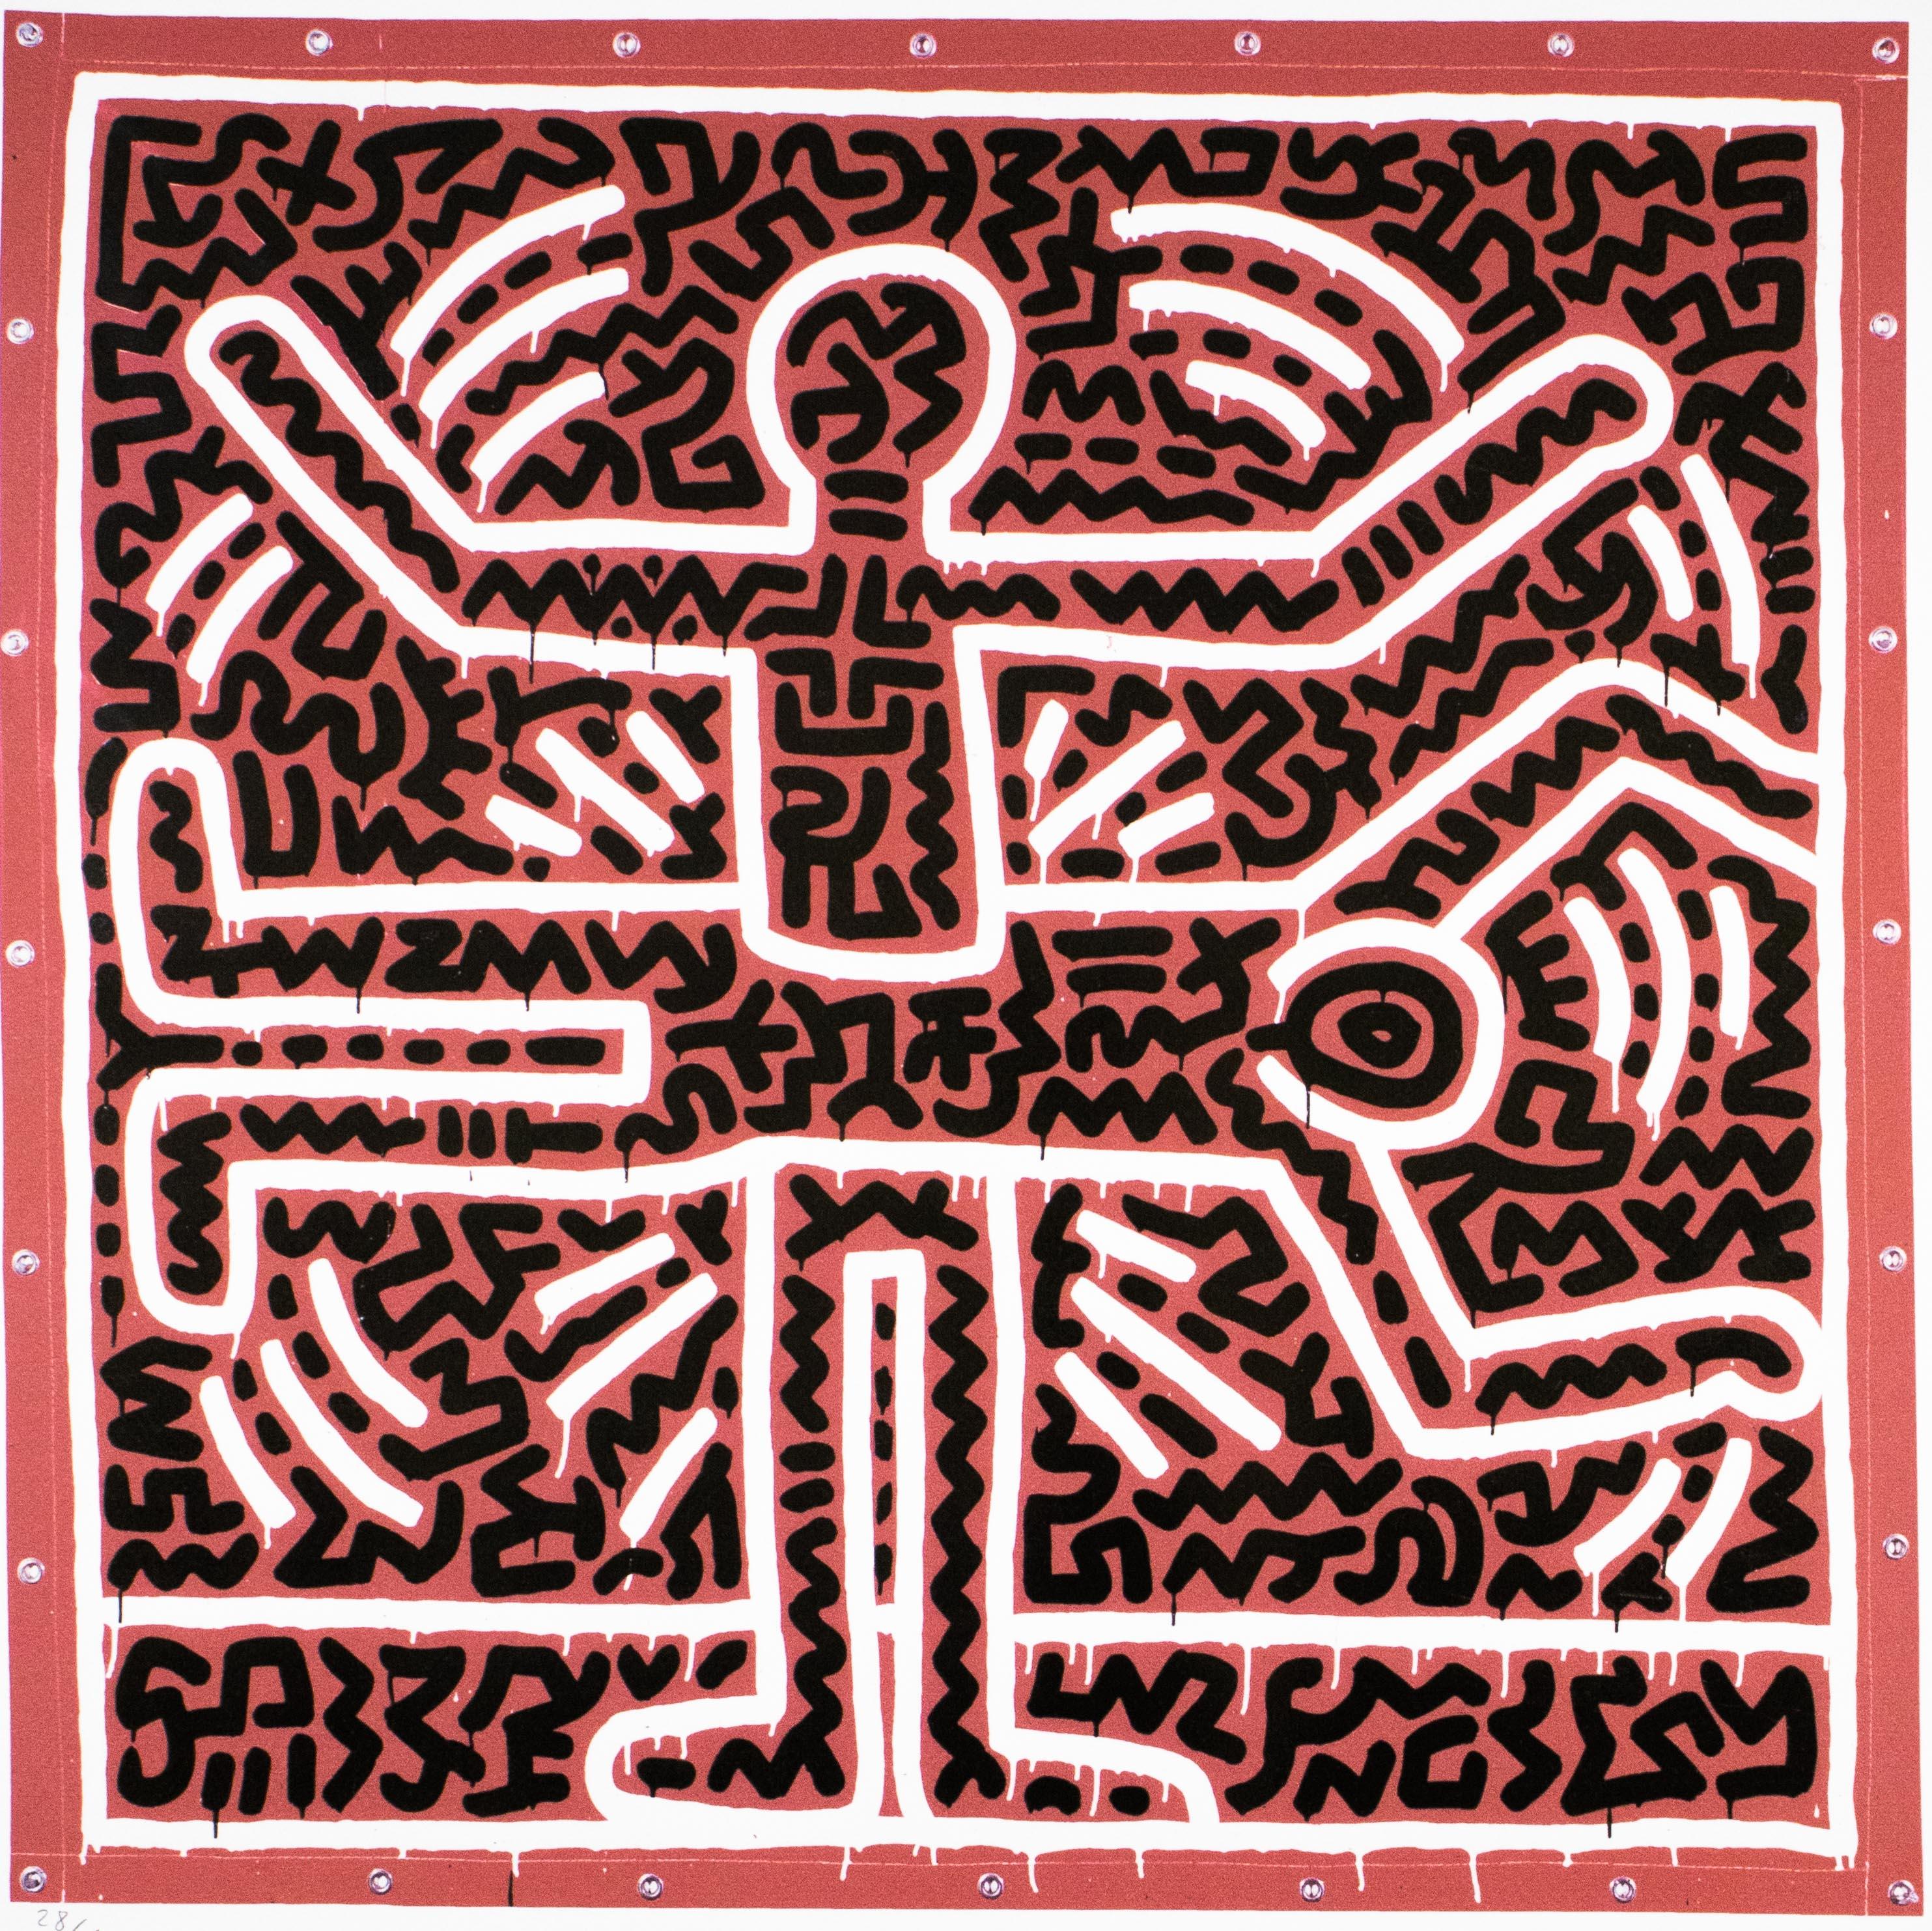 KEITH HARING - Sans titre
Édition limitée des années 1990 par la Keith Haring Foundation, Inc.

Seulement 150 exemplaires au total (ici 28/150).
Lithographie sur carton épais.

Signé dans la plaque.
Édition numérotée à la main au crayon.
Avec le